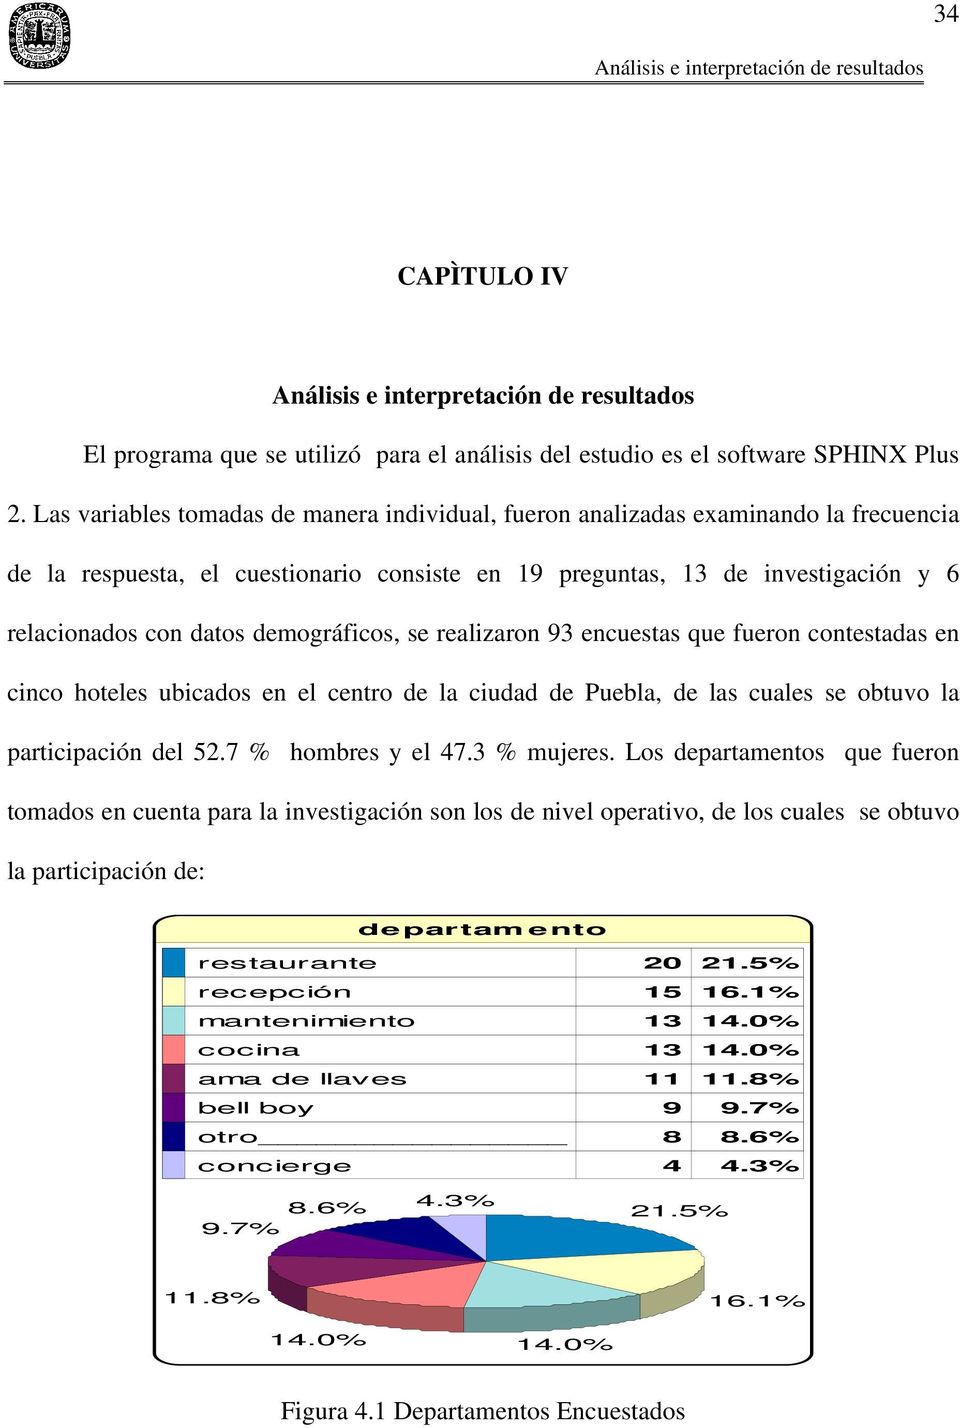 demográficos, se realizaron 9 encuestas que fueron contestadas en cinco hoteles ubicados en el centro de la ciudad de Puebla, de las cuales se obtuvo la participación del 52.7 % hombres y el 47.